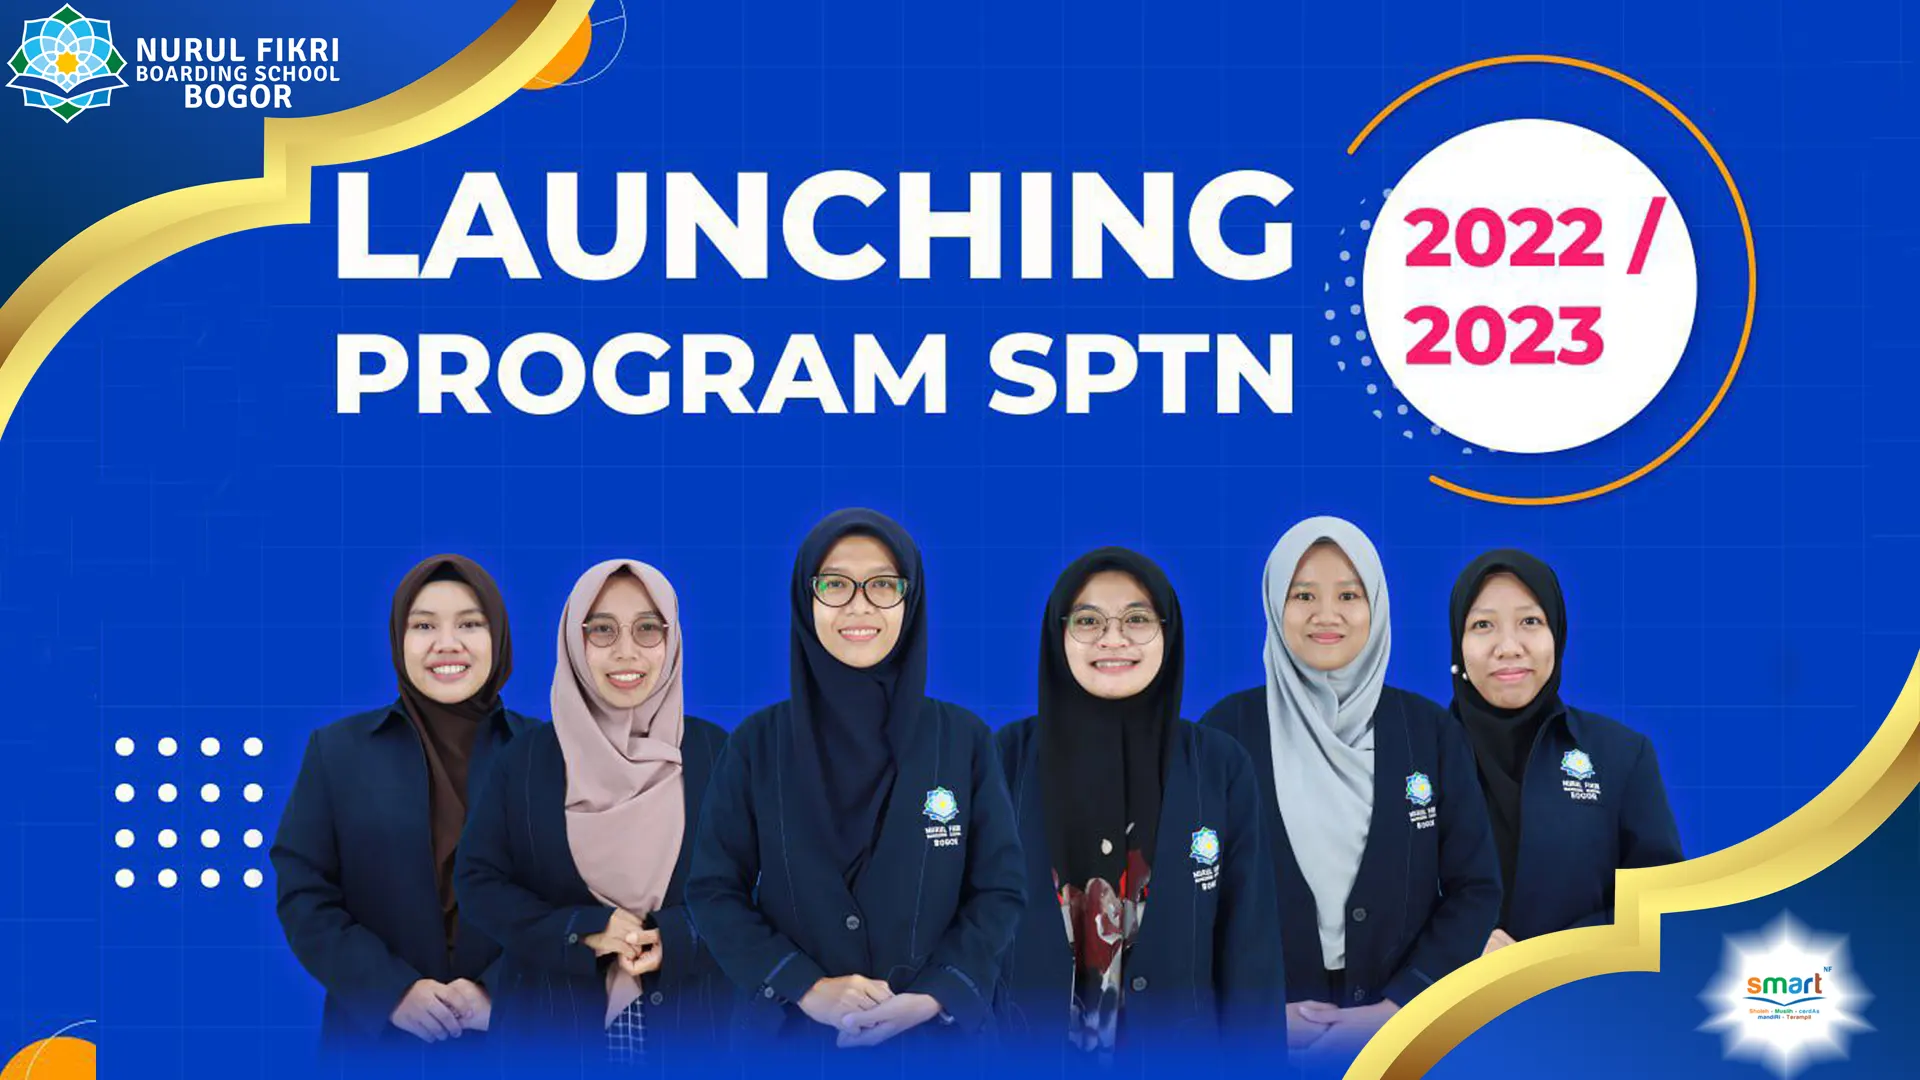 Bismillah, NFBS Bogor  Resmi Launching Program SPTN!